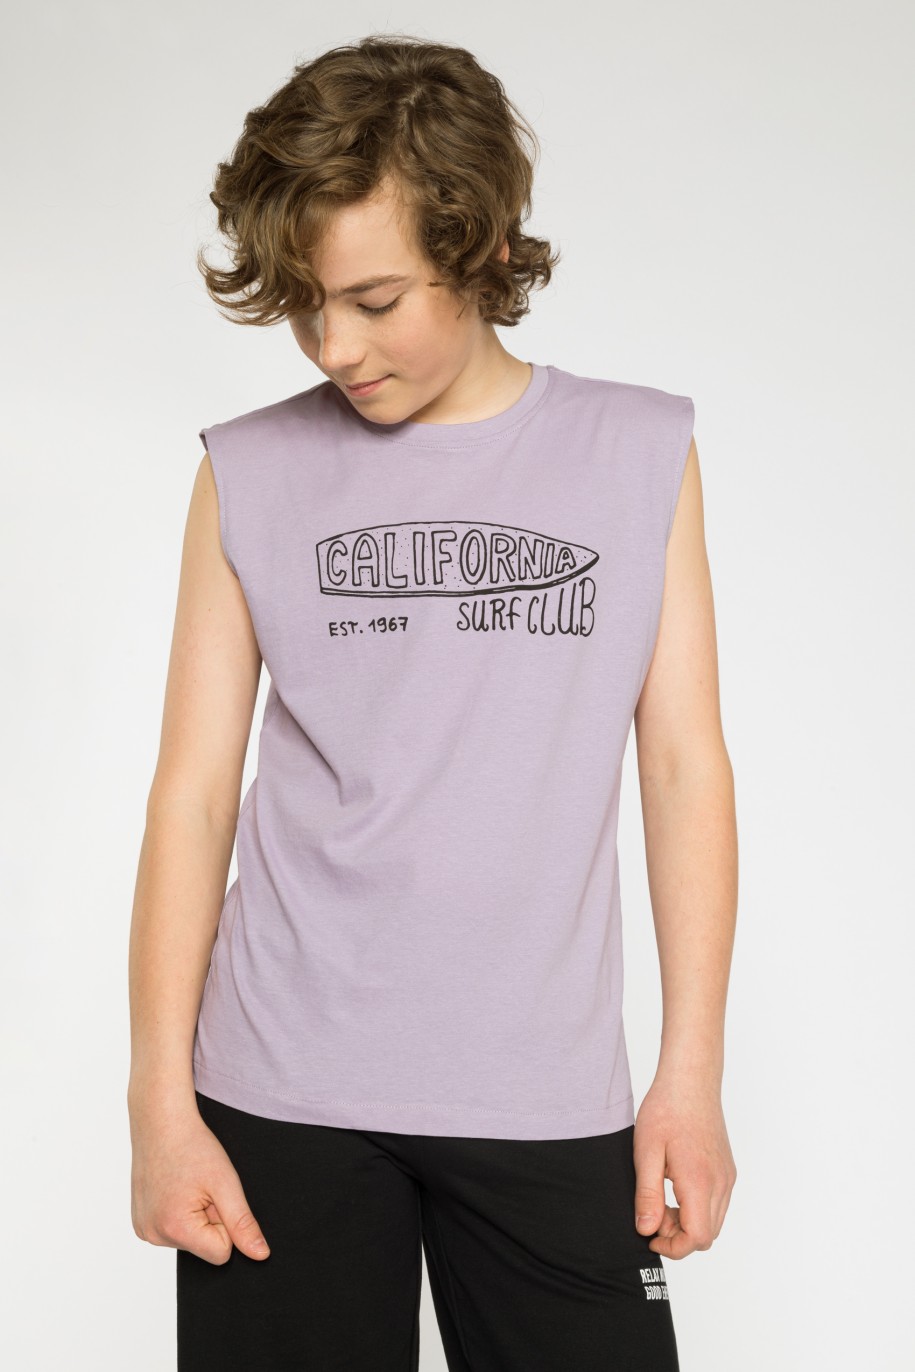 Fioletowy t-shirt bez rękawów CALIFORNIA SURF CLUB - 41417